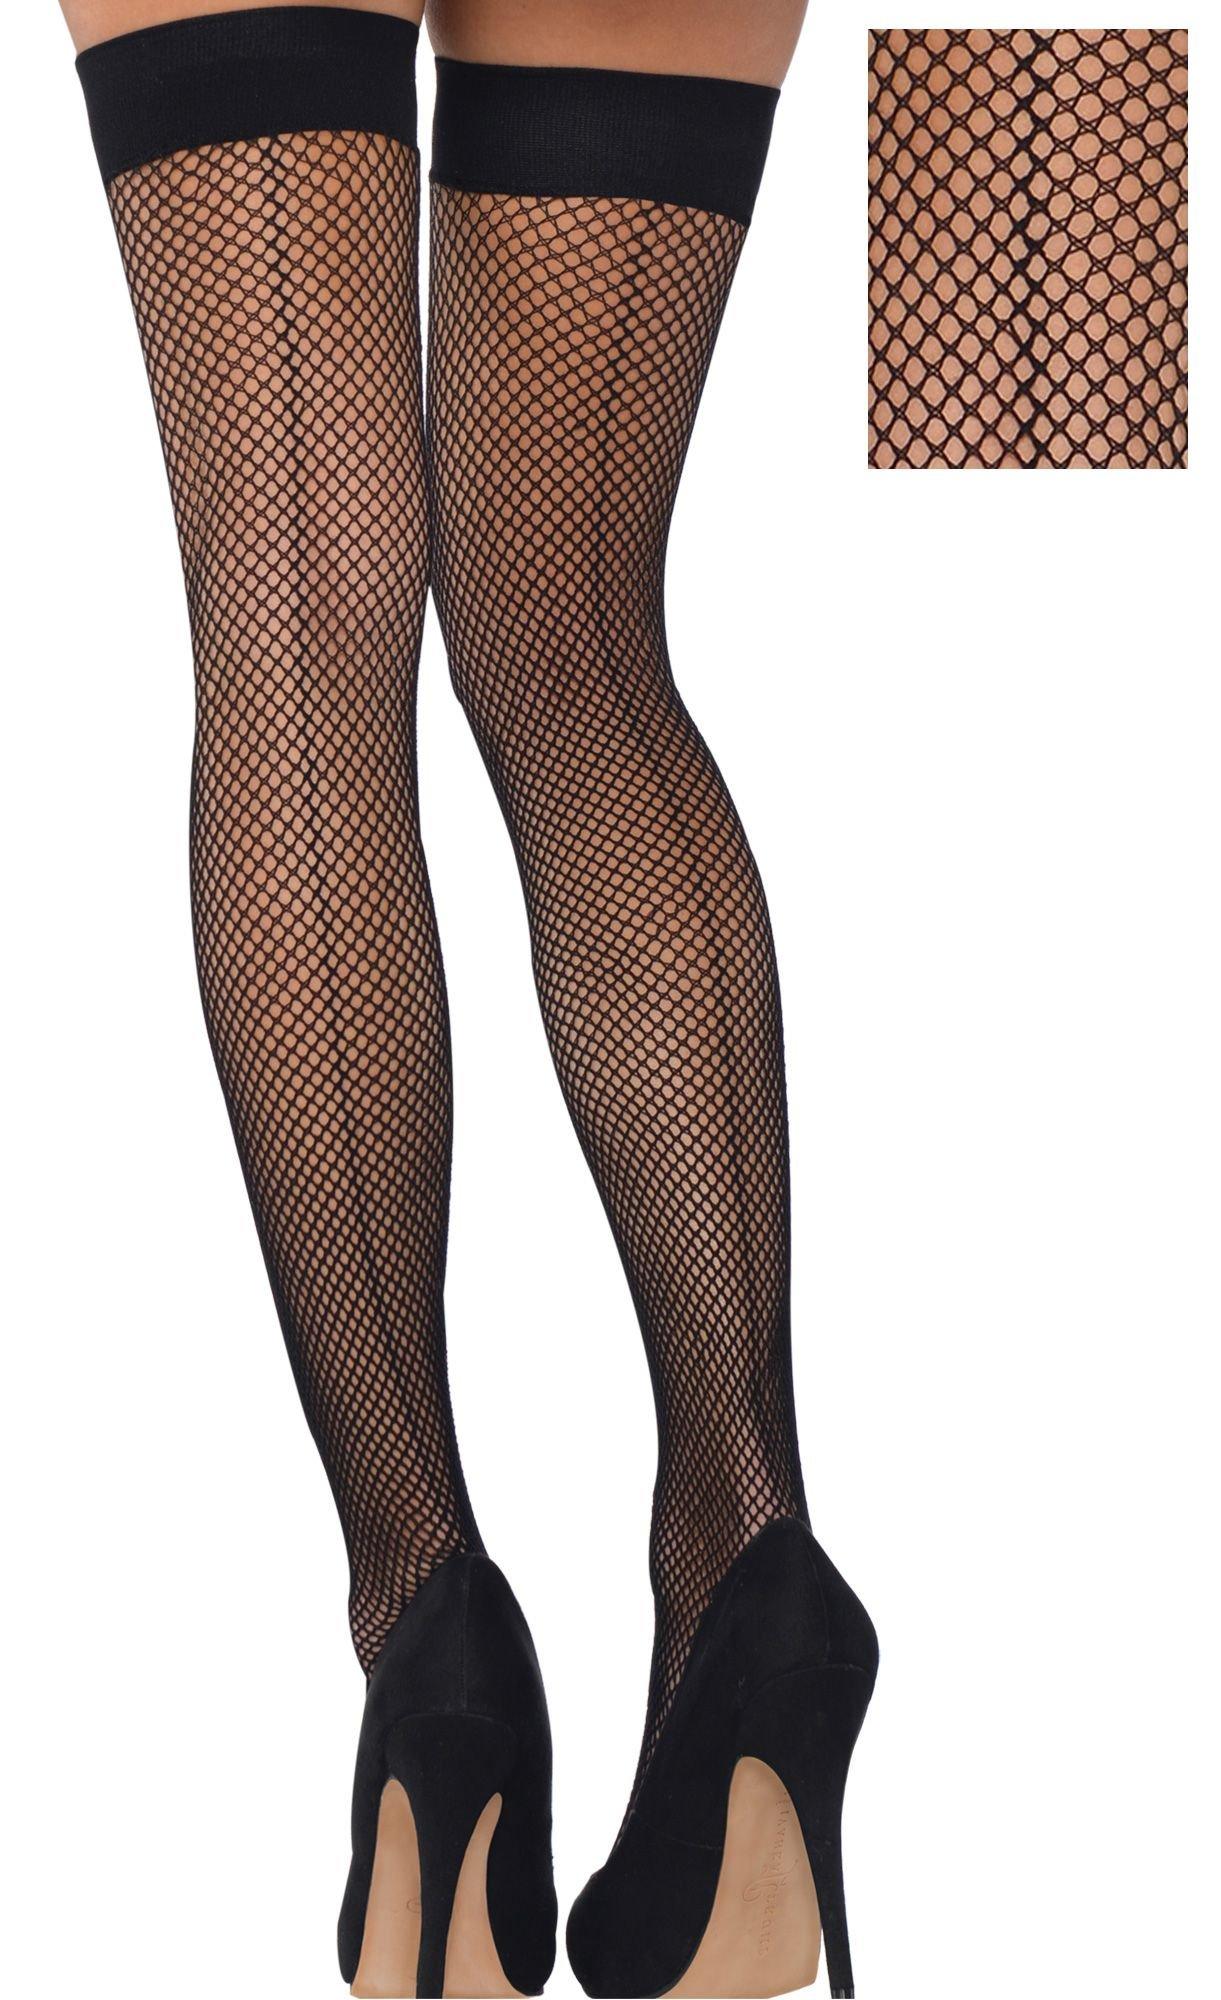 Wholesale Sexy Fishnet Socks Stylish Pantyhose & Stockings 